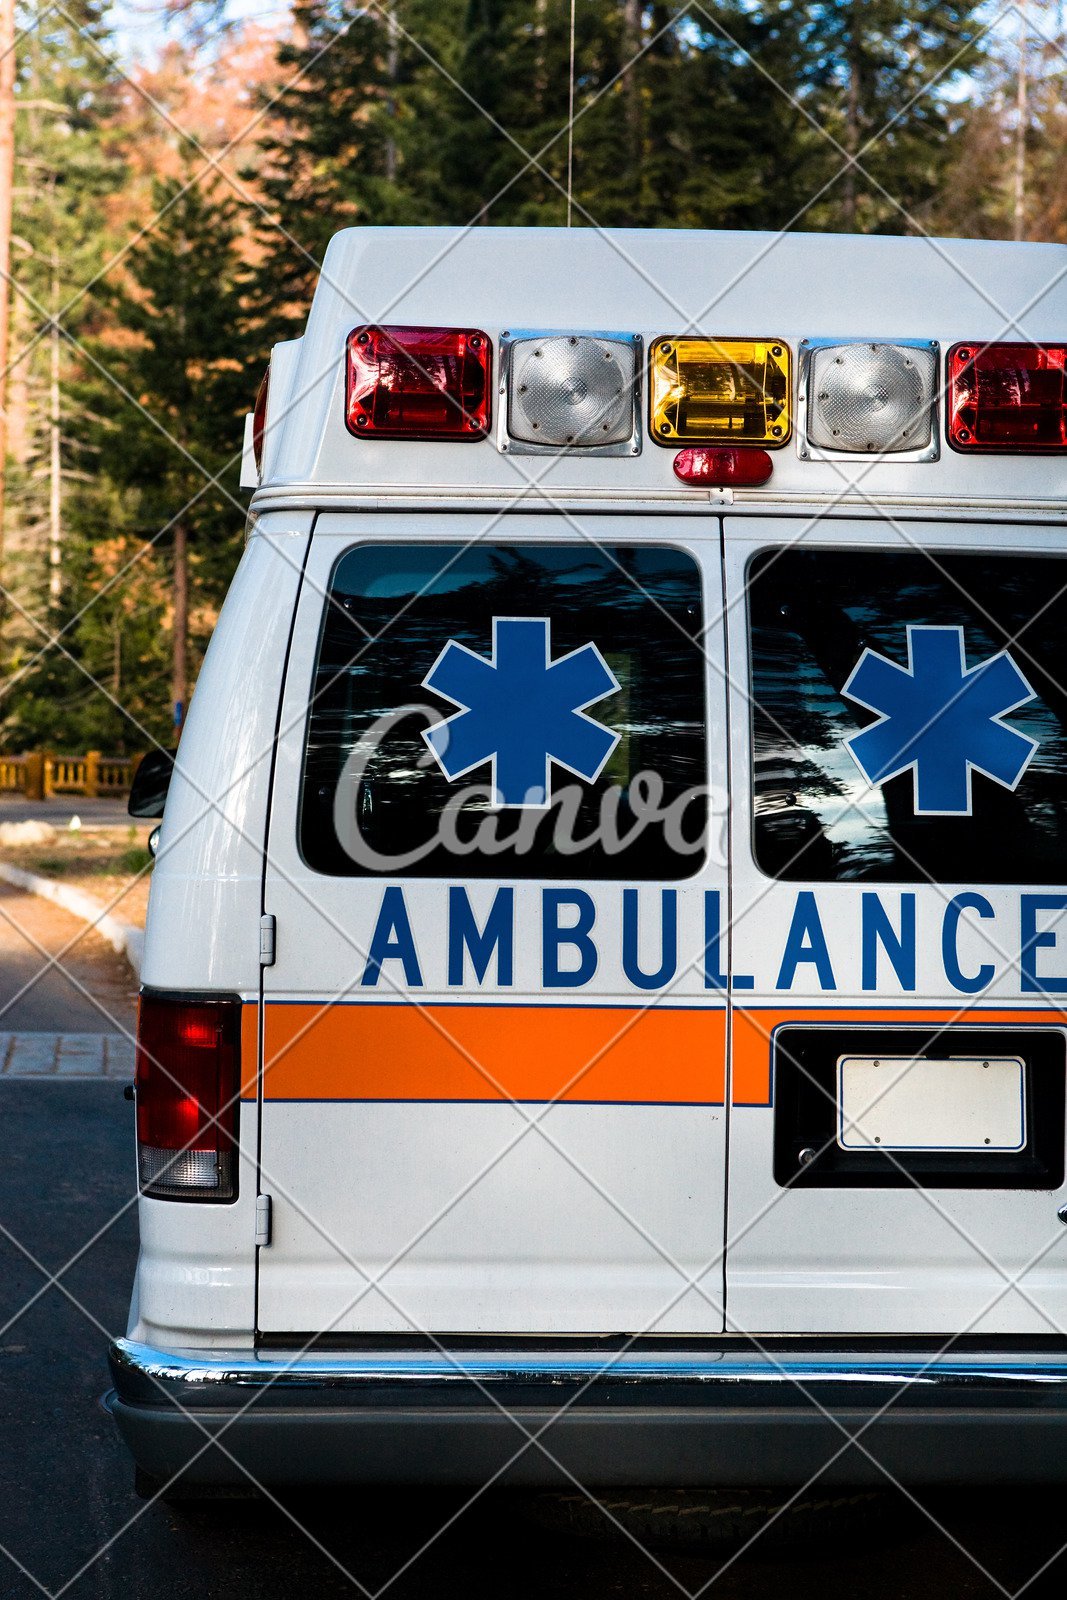 La photo de l'ambulance | Source: Pexels